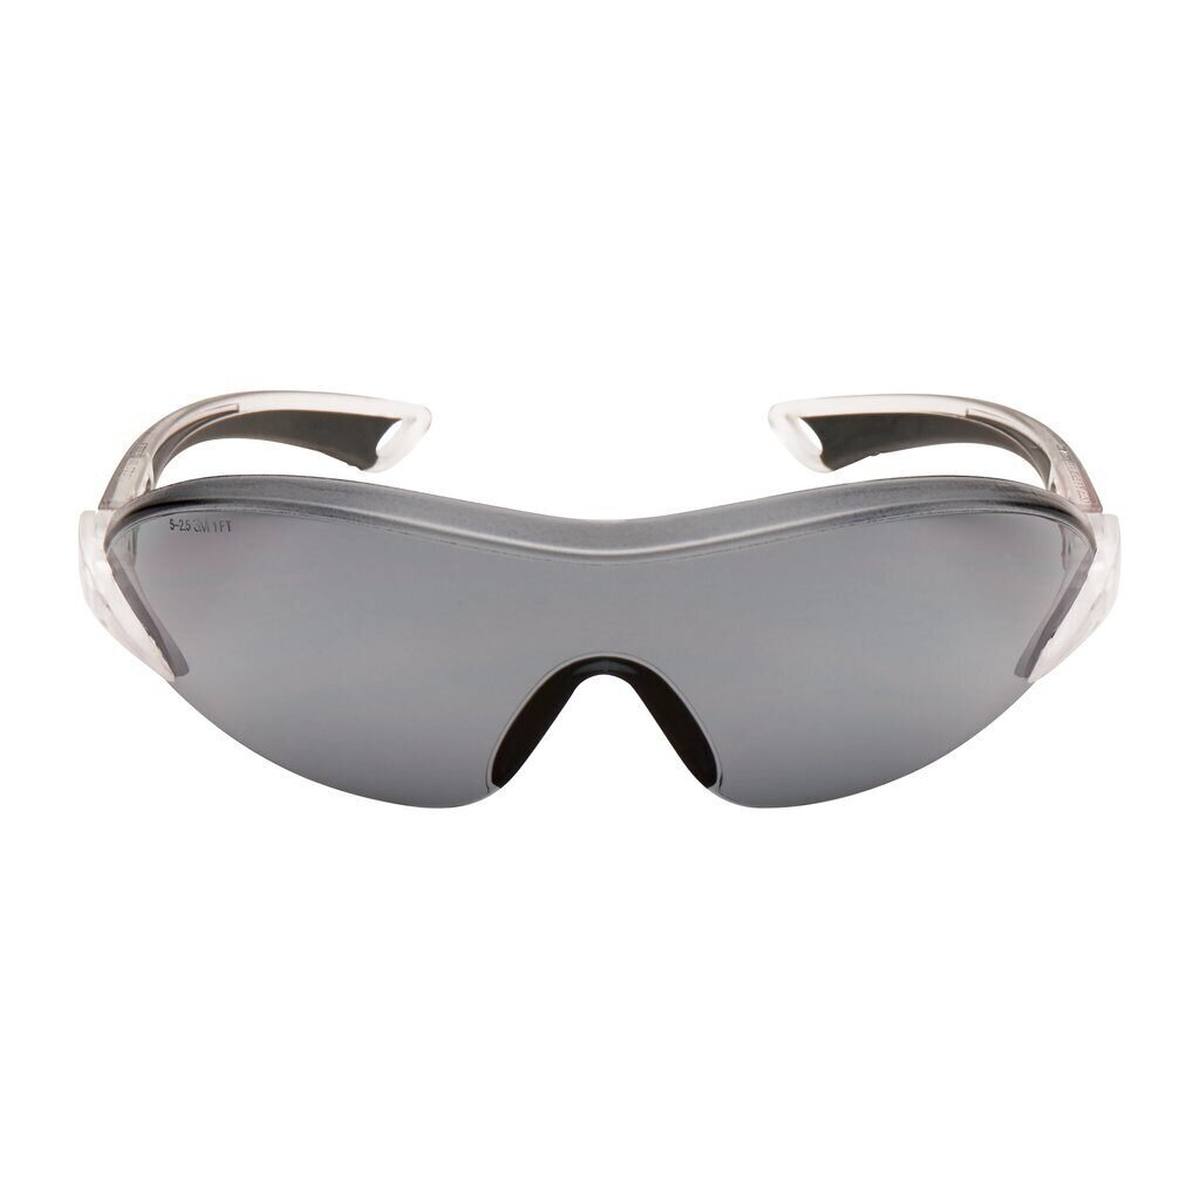 3M 2841 Gafas de protección AS/AF/UV, PC, tintadas en gris, patillas ajustables en longitud e inclinación, terminales blandos